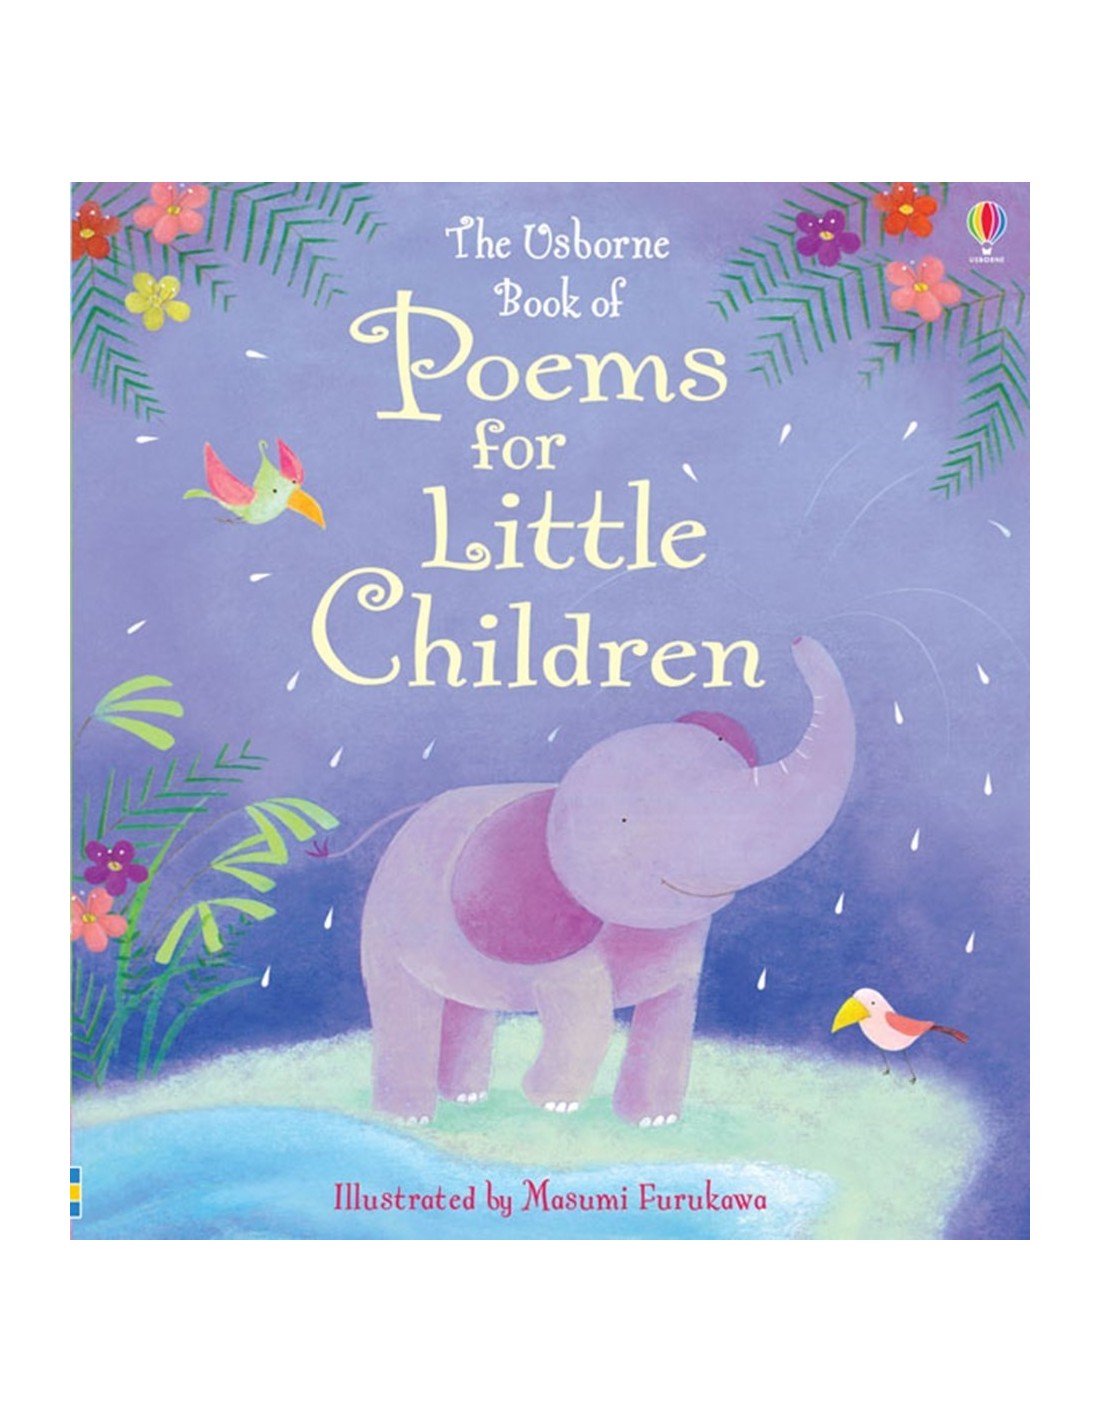 Poems for little children